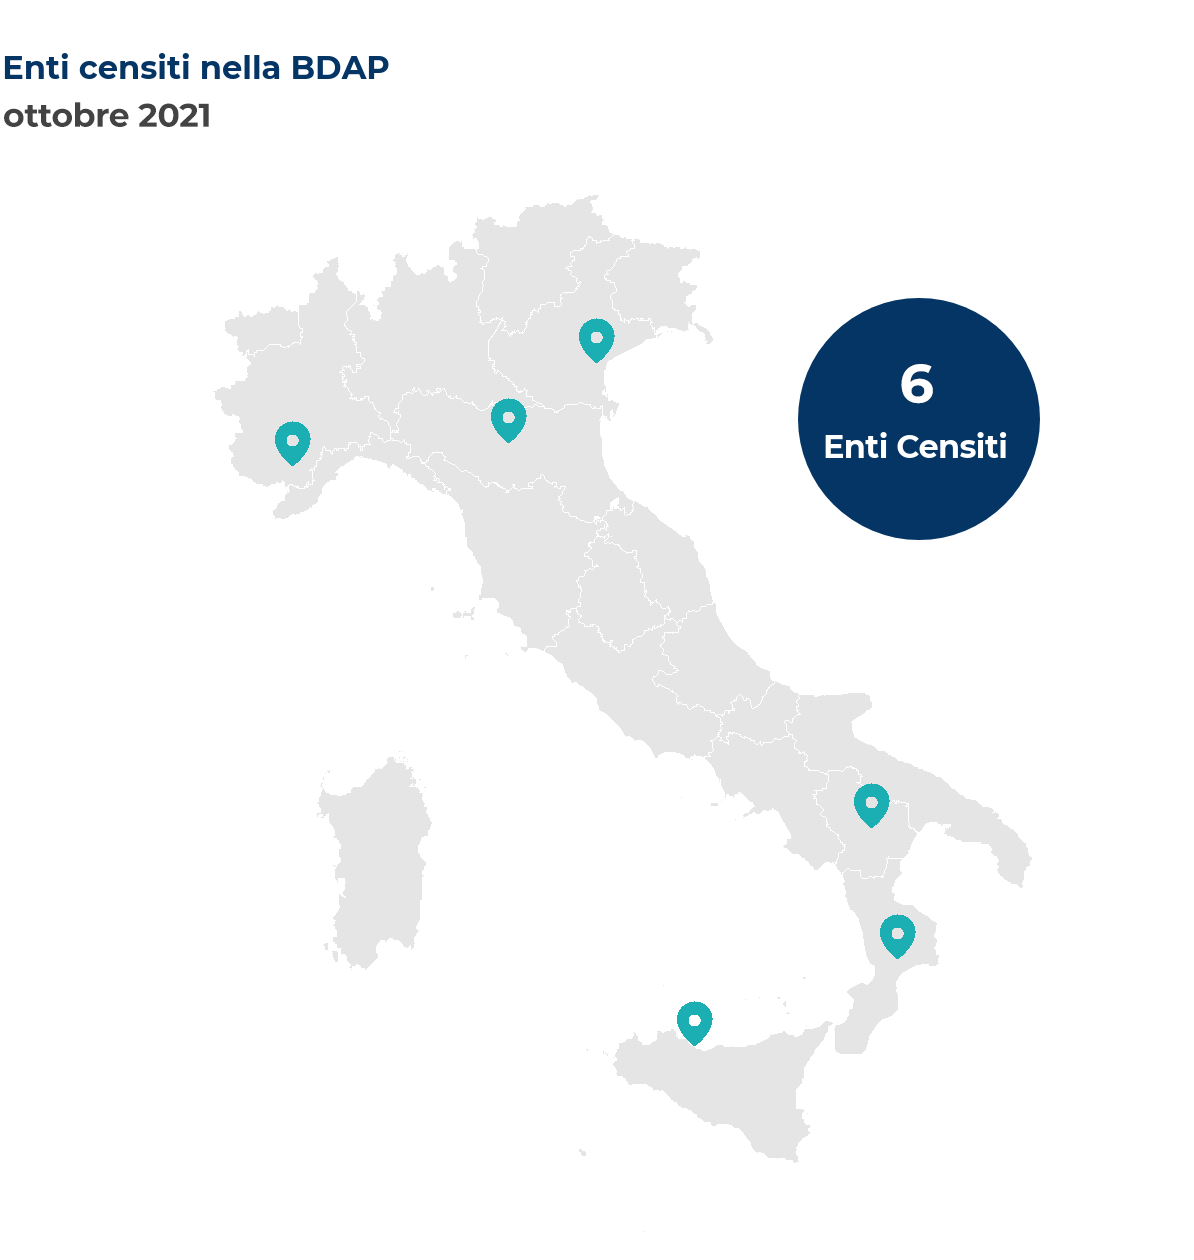 Mappa dell'Italia che mostra la localizzazione degli enti censiti nella BDAP. Nel mese di ottobre 2021 sono stati censiti 6 nuovi enti così distribuiti per regione: Basilicata 1 ente; Calabria 1 ente; Emilia-Romagna 1 ente; Piemonte 1 ente; Sicilia 1 ente; Veneto 1 ente.